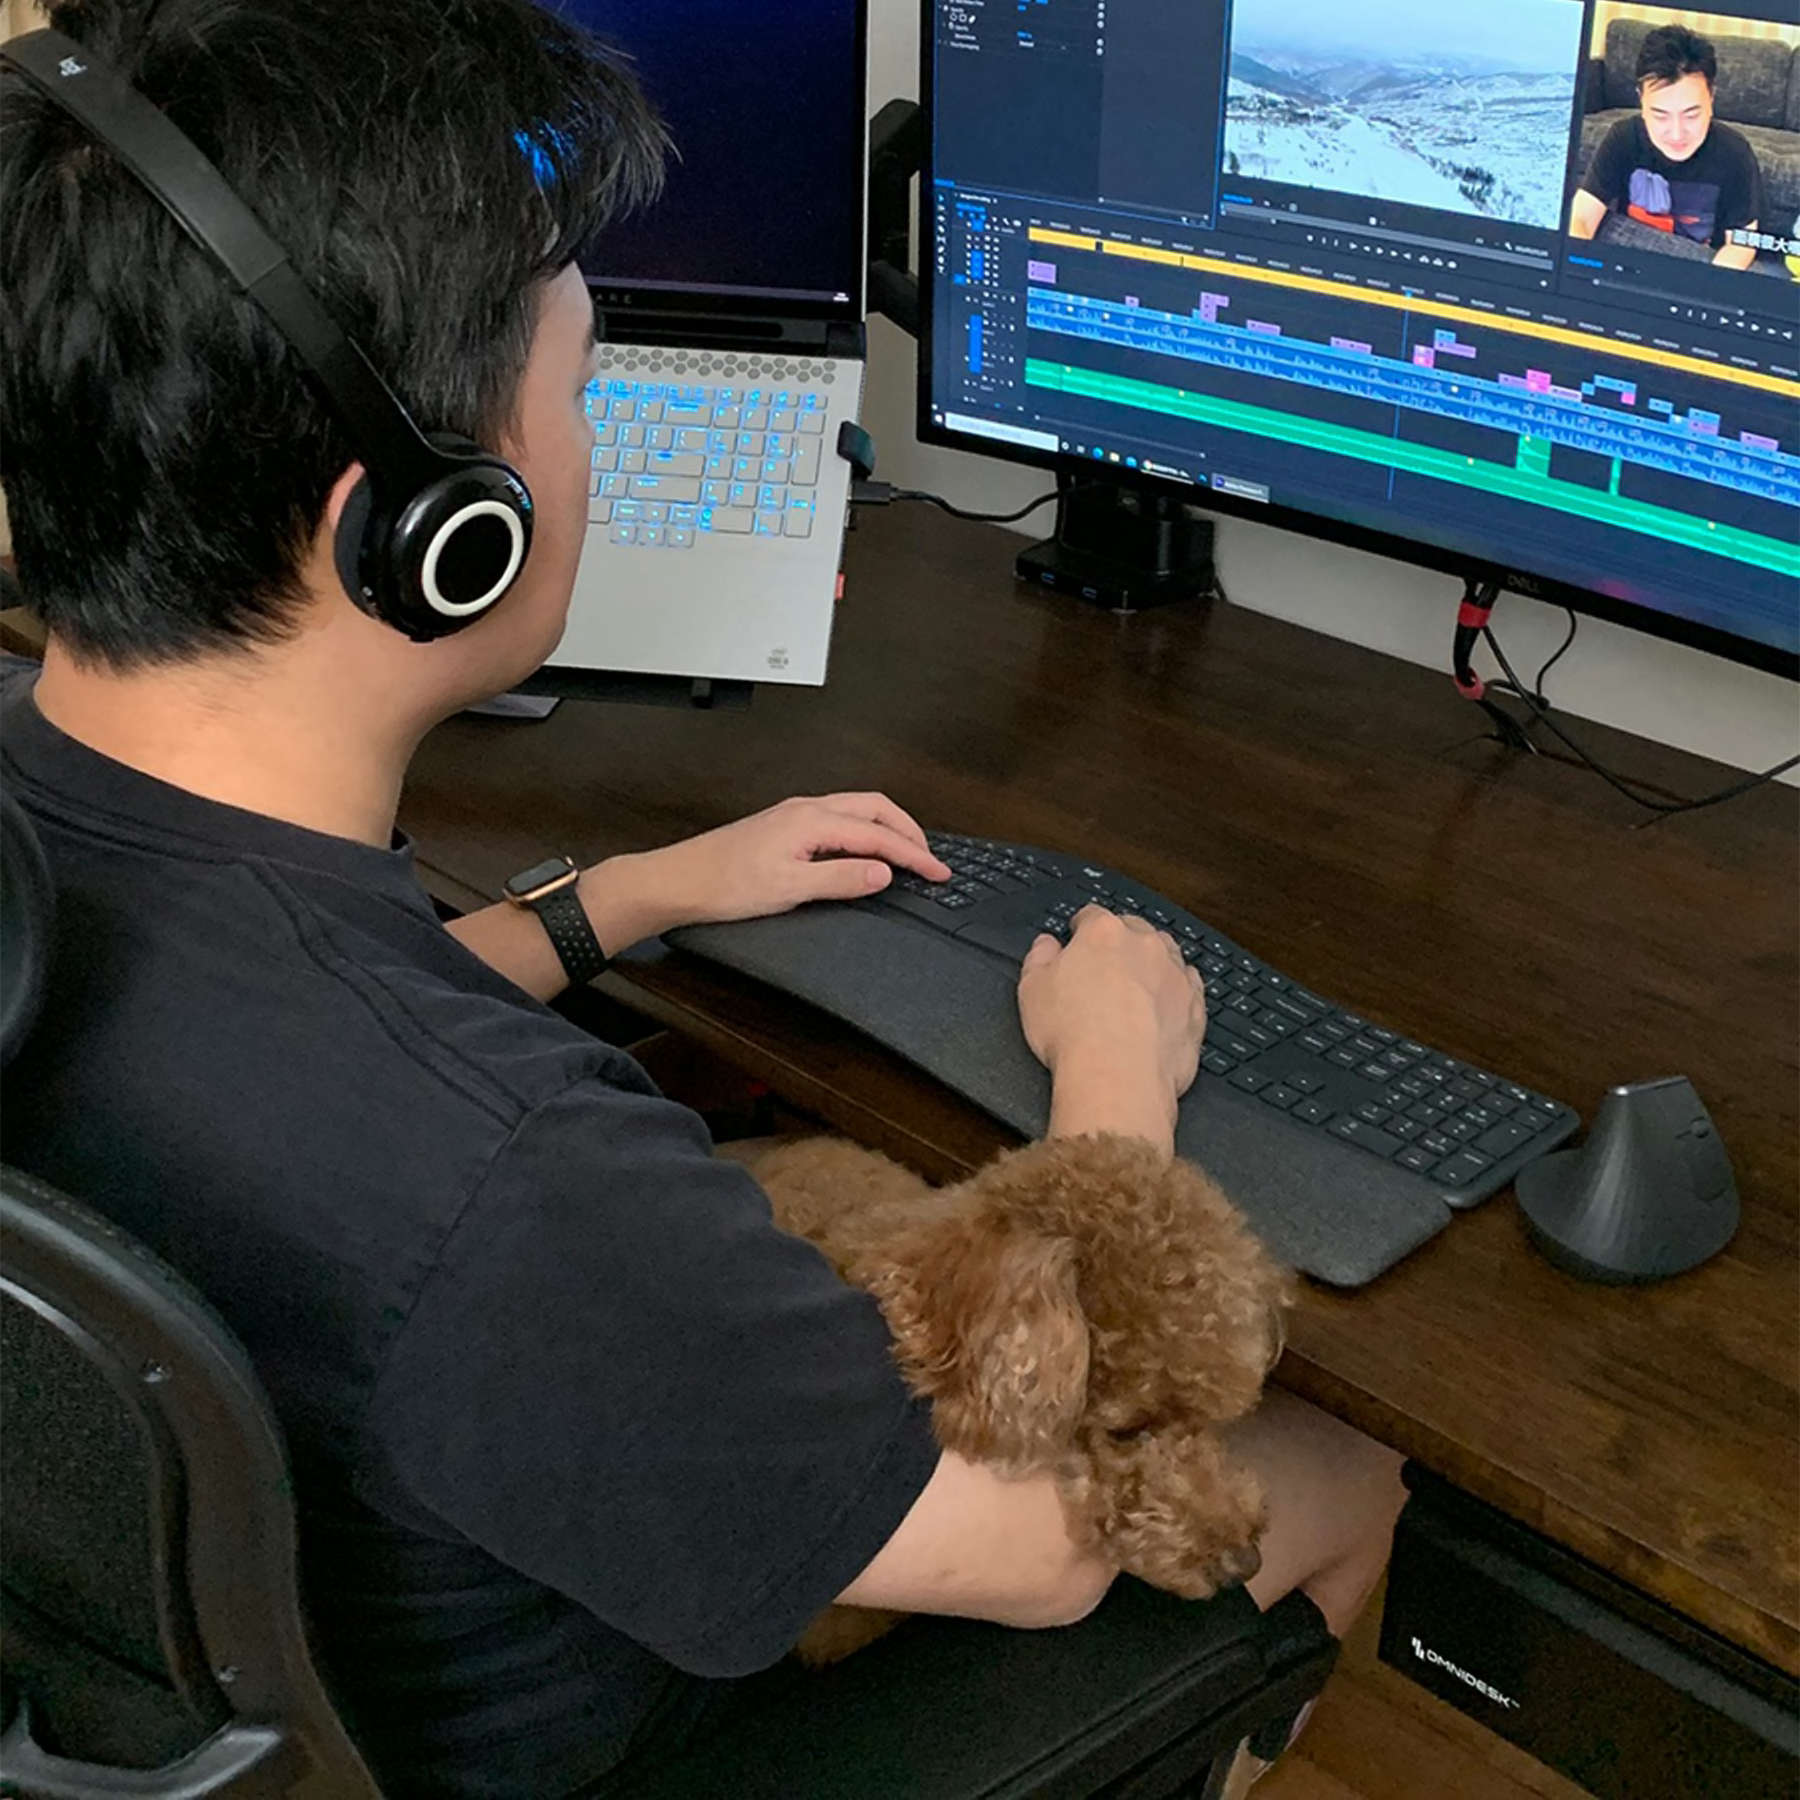 Youtube-skaparen Gao använder ergonomisk mus och tangentbord